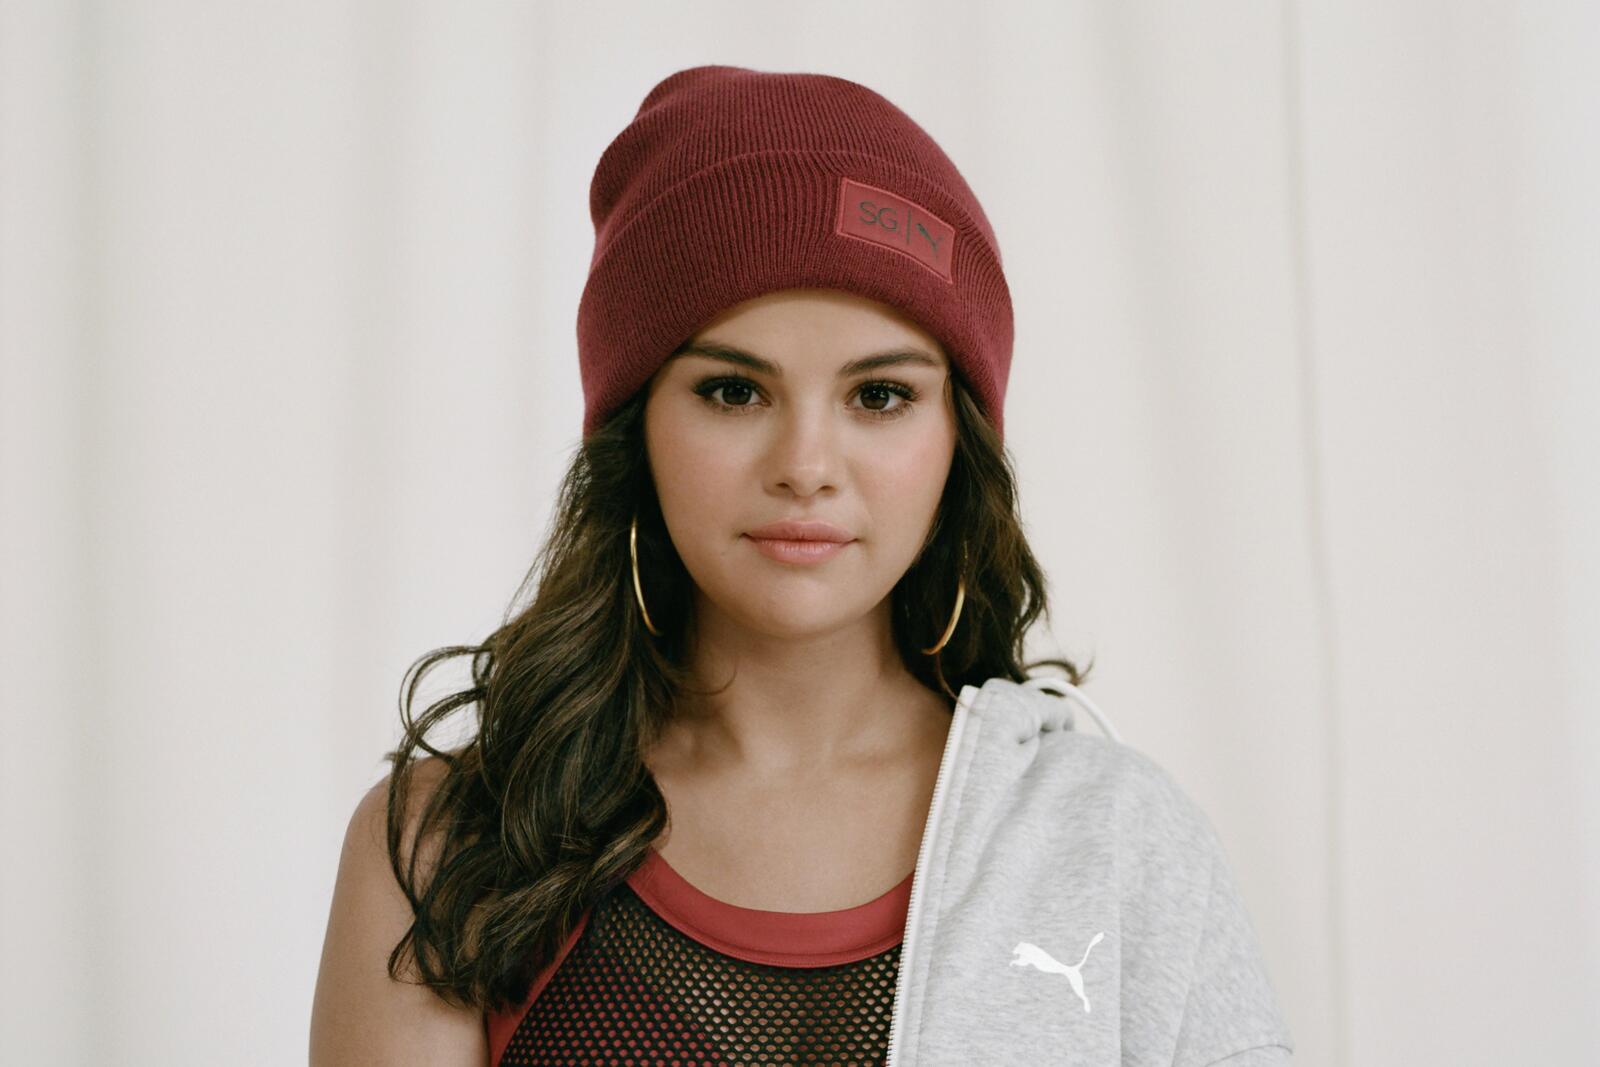 Wallpapers celebrities puma Selena Gomez on the desktop